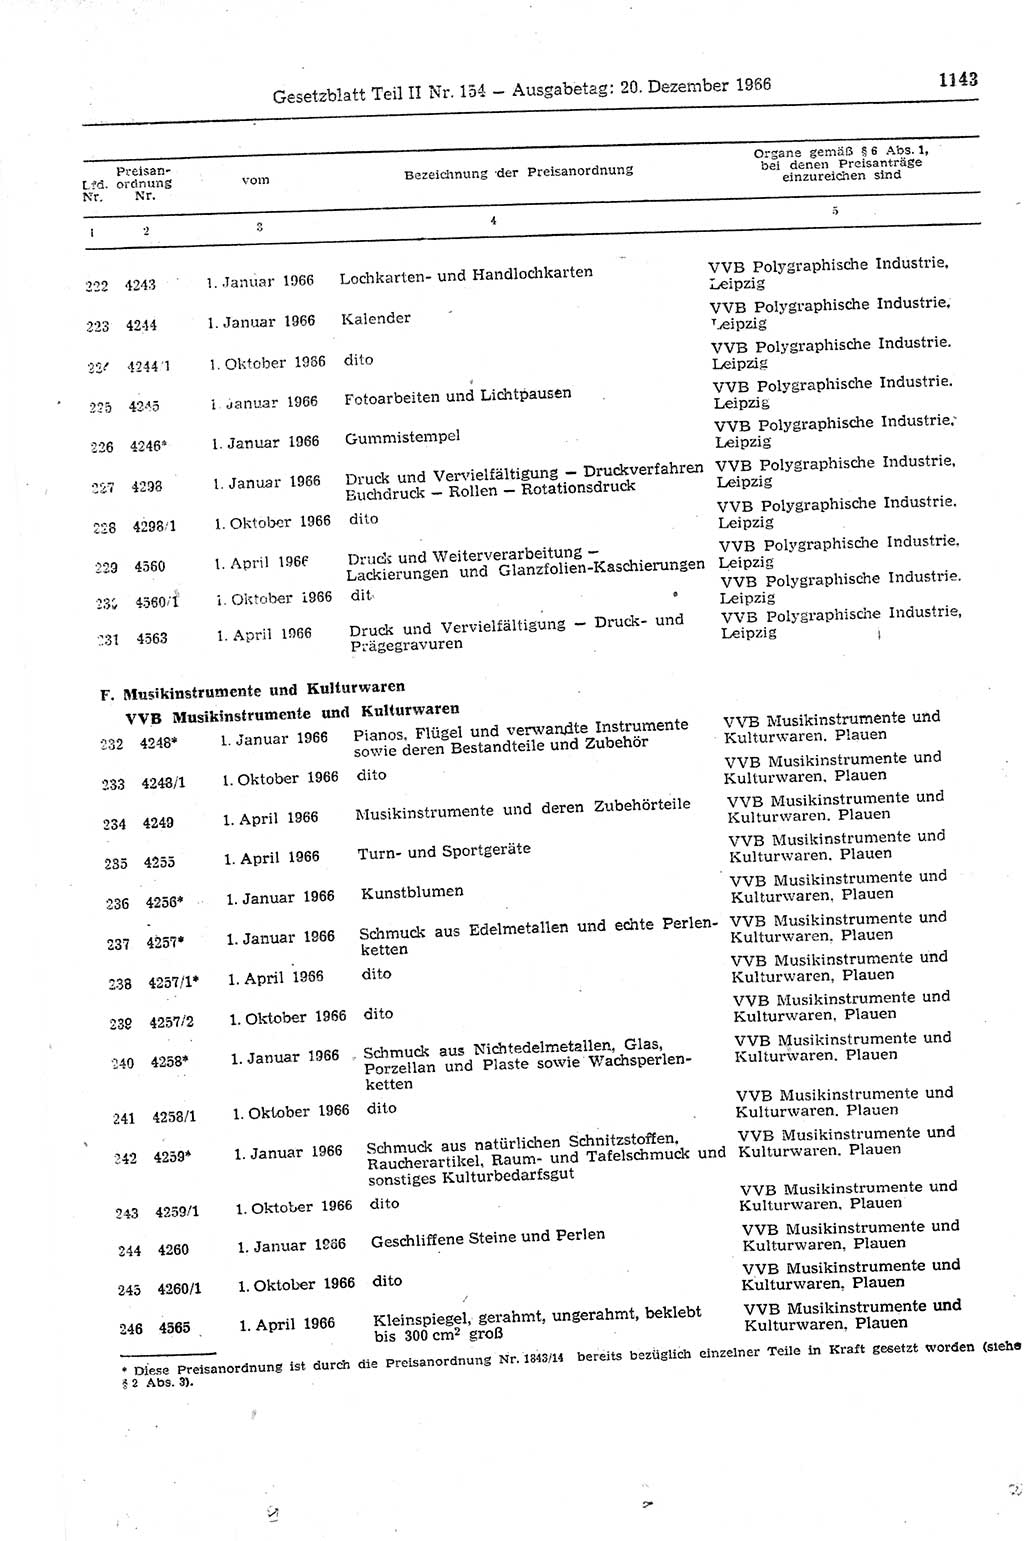 Gesetzblatt (GBl.) der Deutschen Demokratischen Republik (DDR) Teil ⅠⅠ 1966, Seite 1143 (GBl. DDR ⅠⅠ 1966, S. 1143)